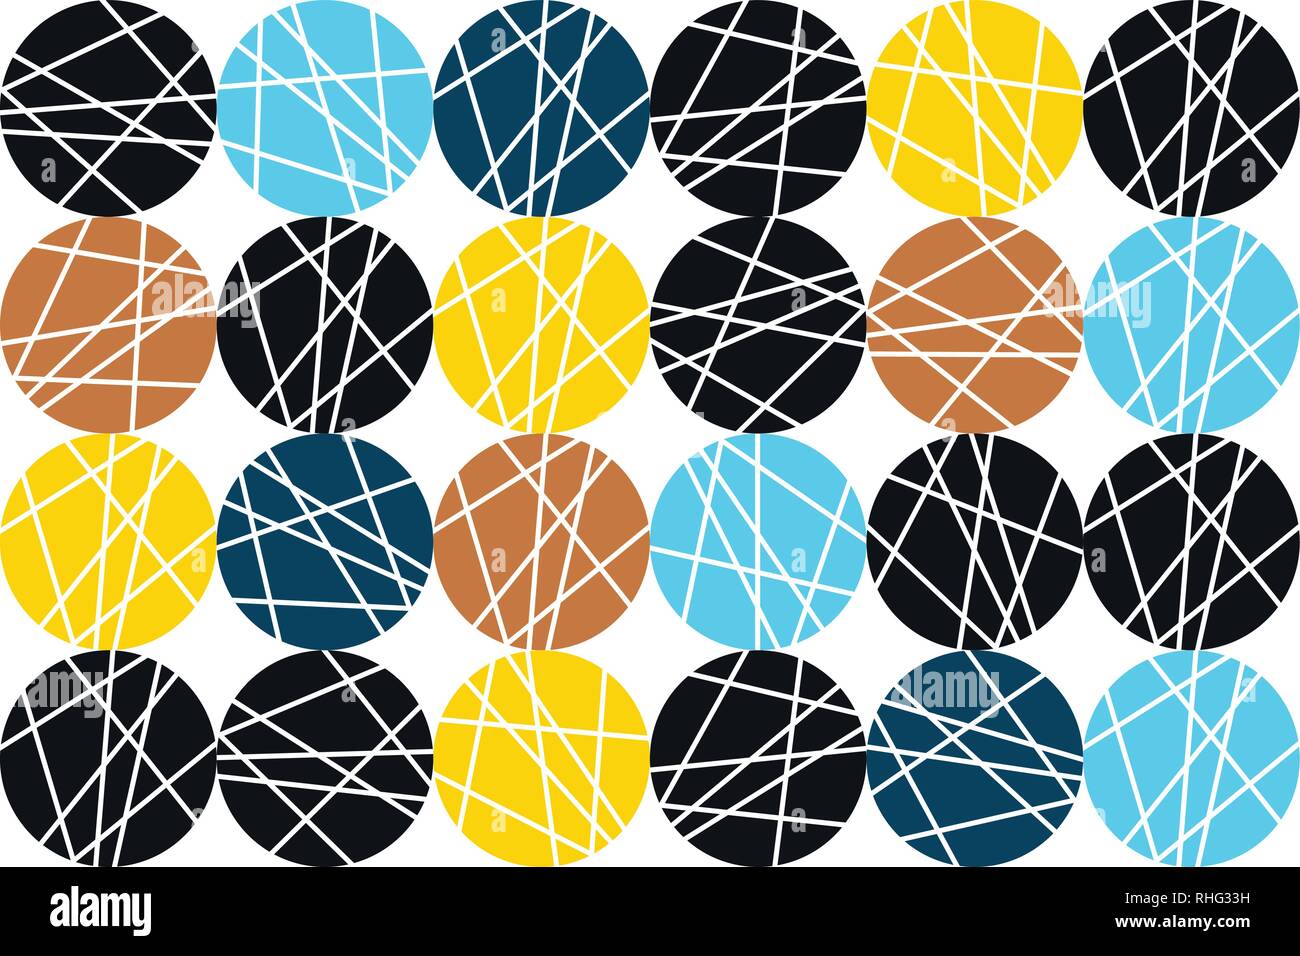 Nahtlose, abstrakte Muster, mit farbenfrohen, gestreiften Kreise gemacht. Verspielt, helle vector Art. Stock Vektor